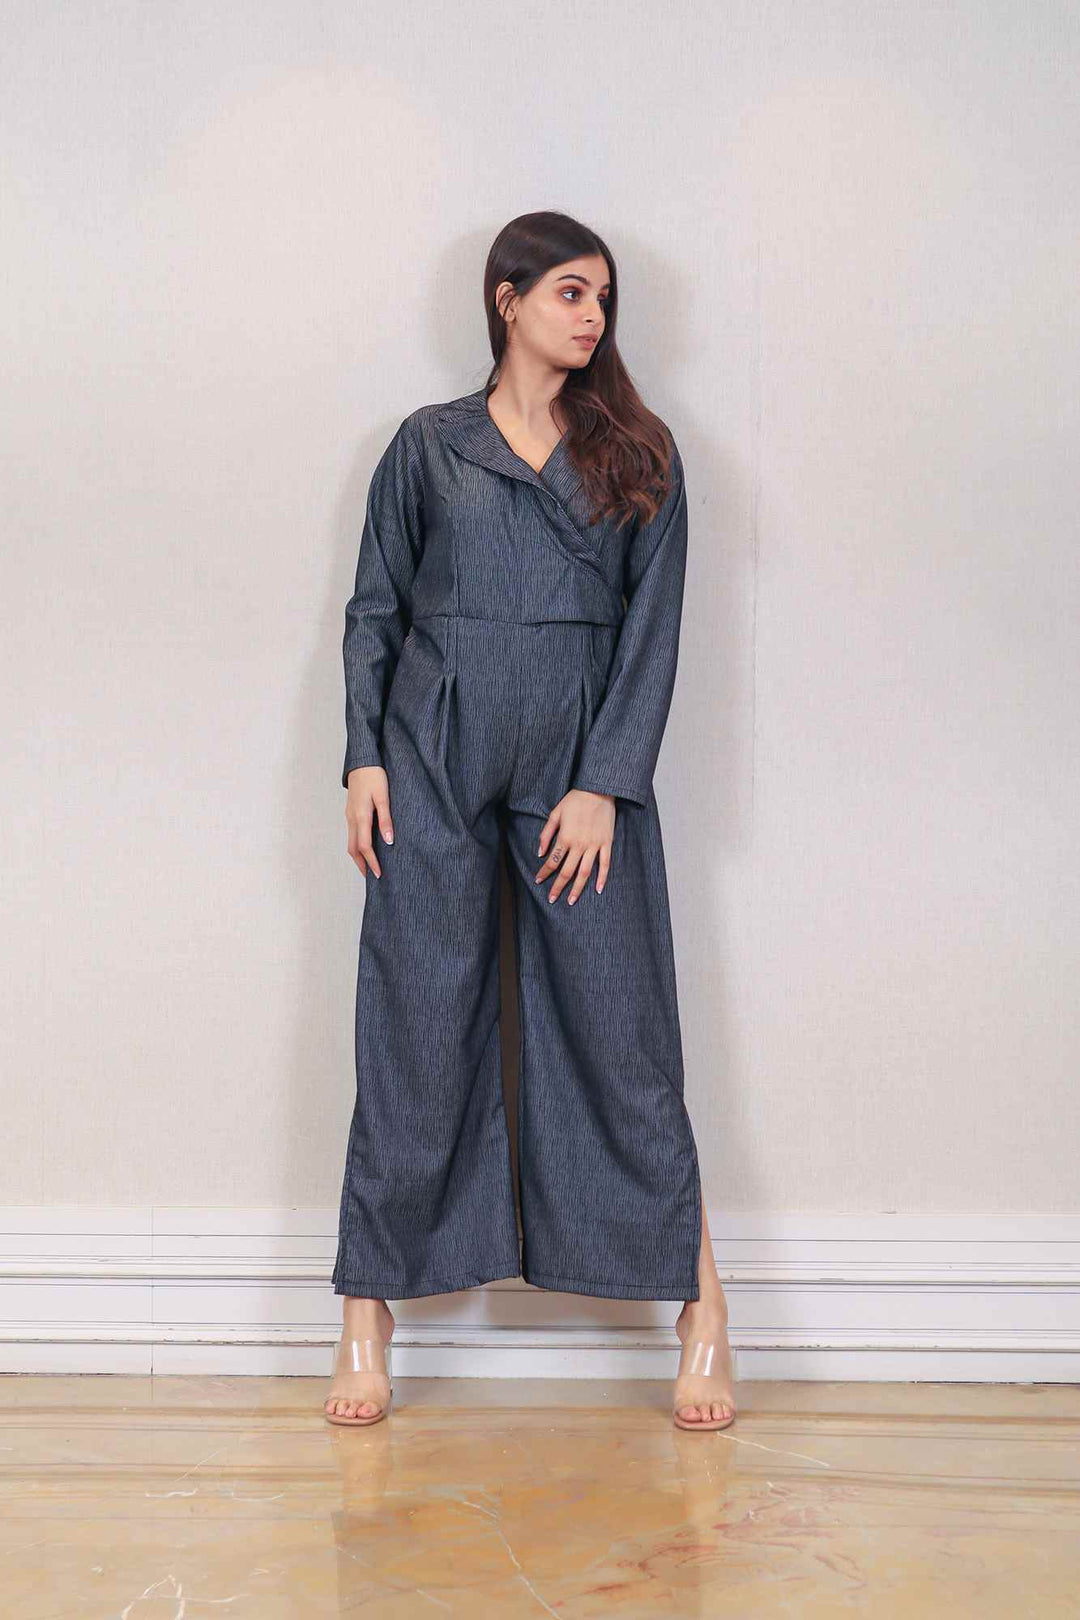 Designer Charcoal Grey color jumpsuit